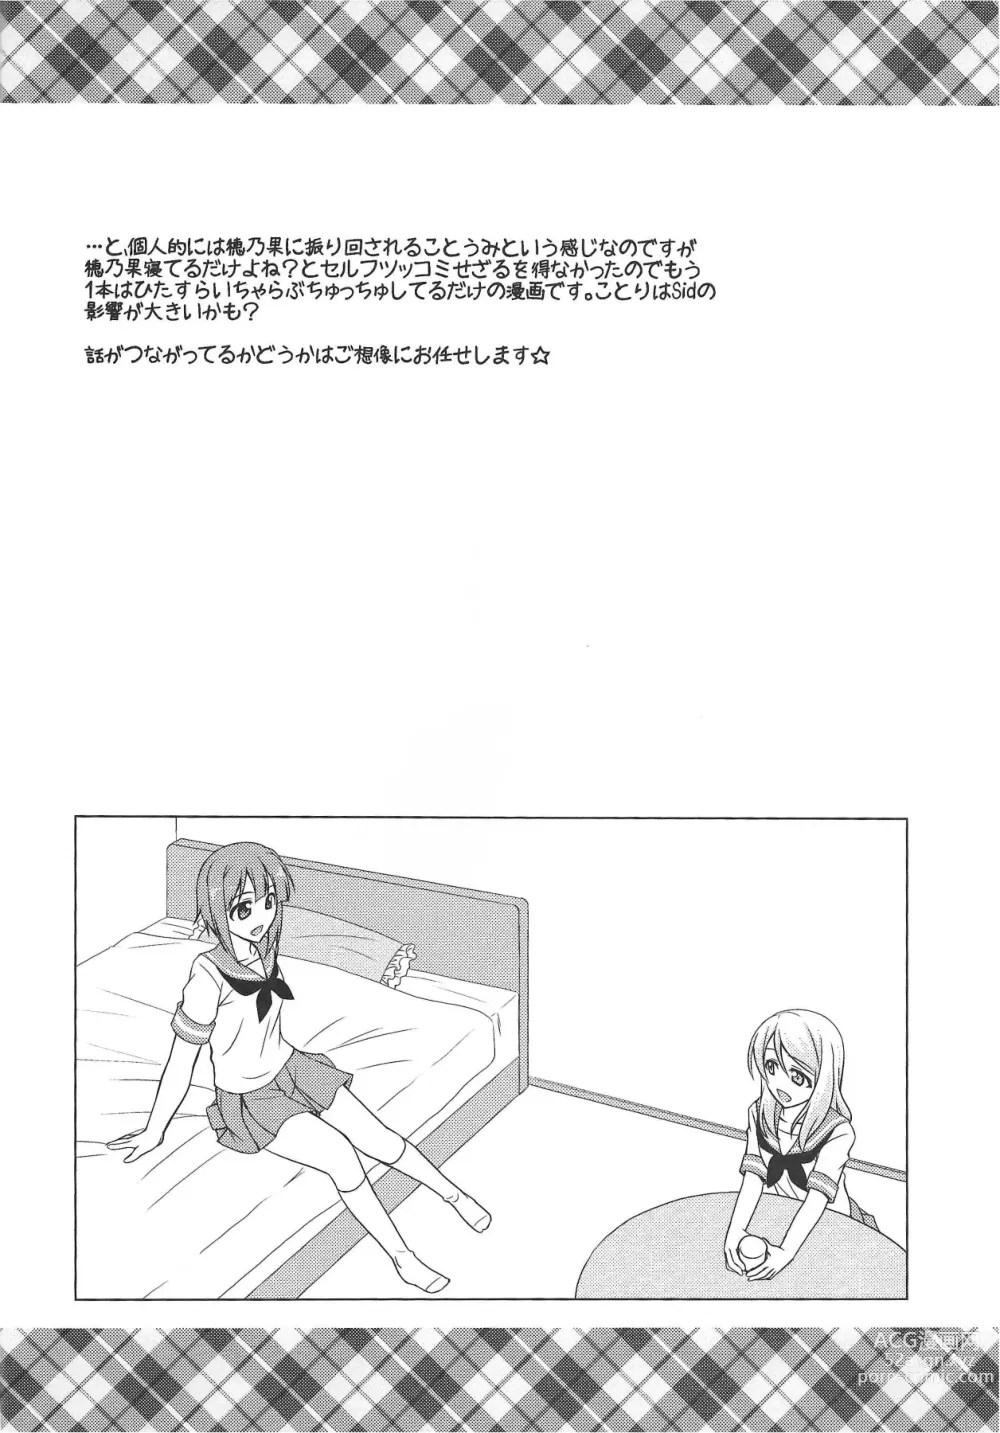 Page 17 of doujinshi ZUTTO!